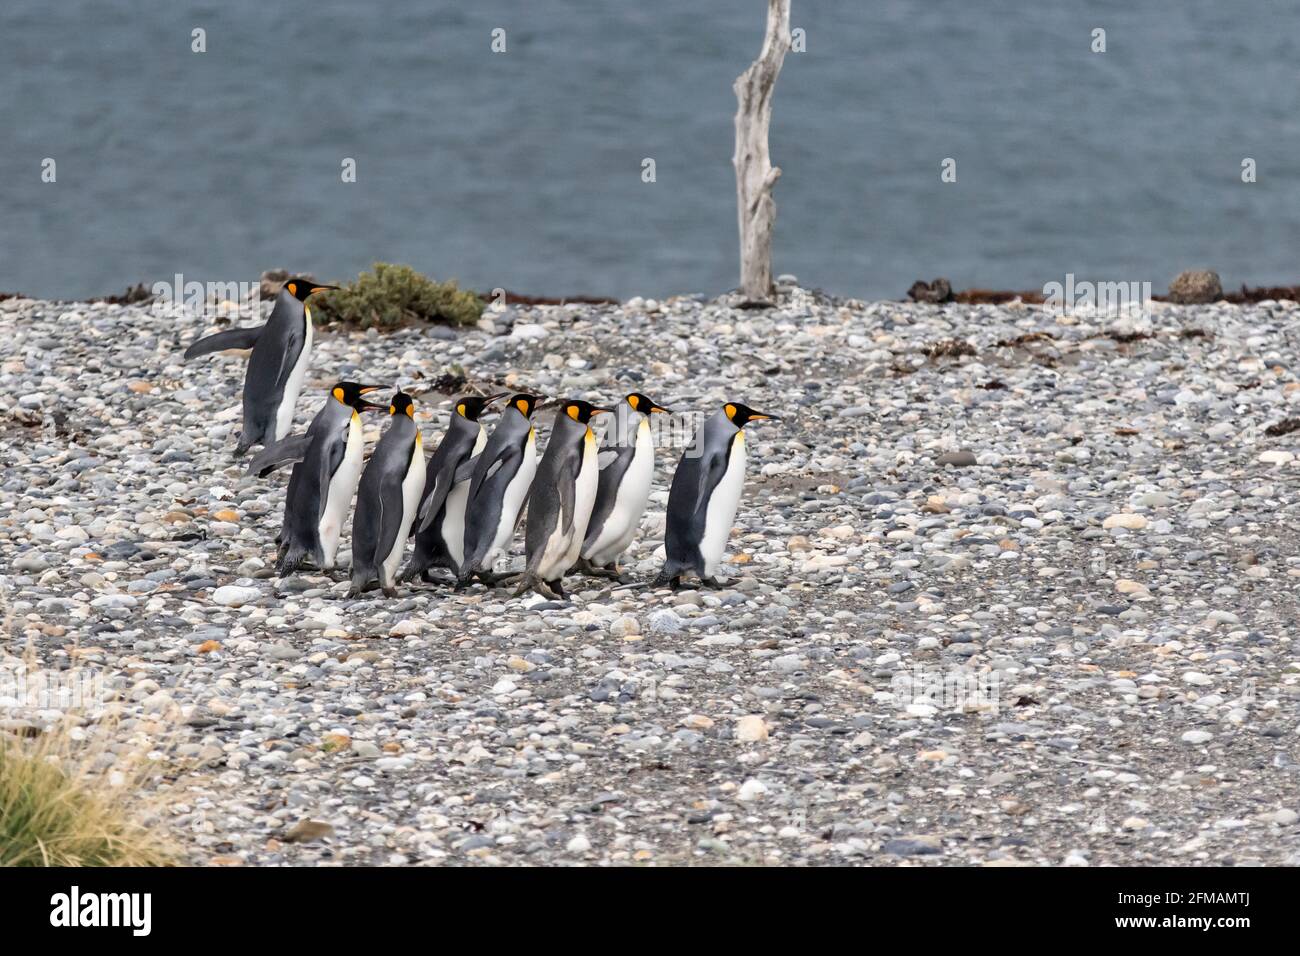 King penguins (Aptenodytes patagonicus) on Tierra del Fuego, Parque Pinguino Rey, Tierra del Fuego, Chile Stock Photo